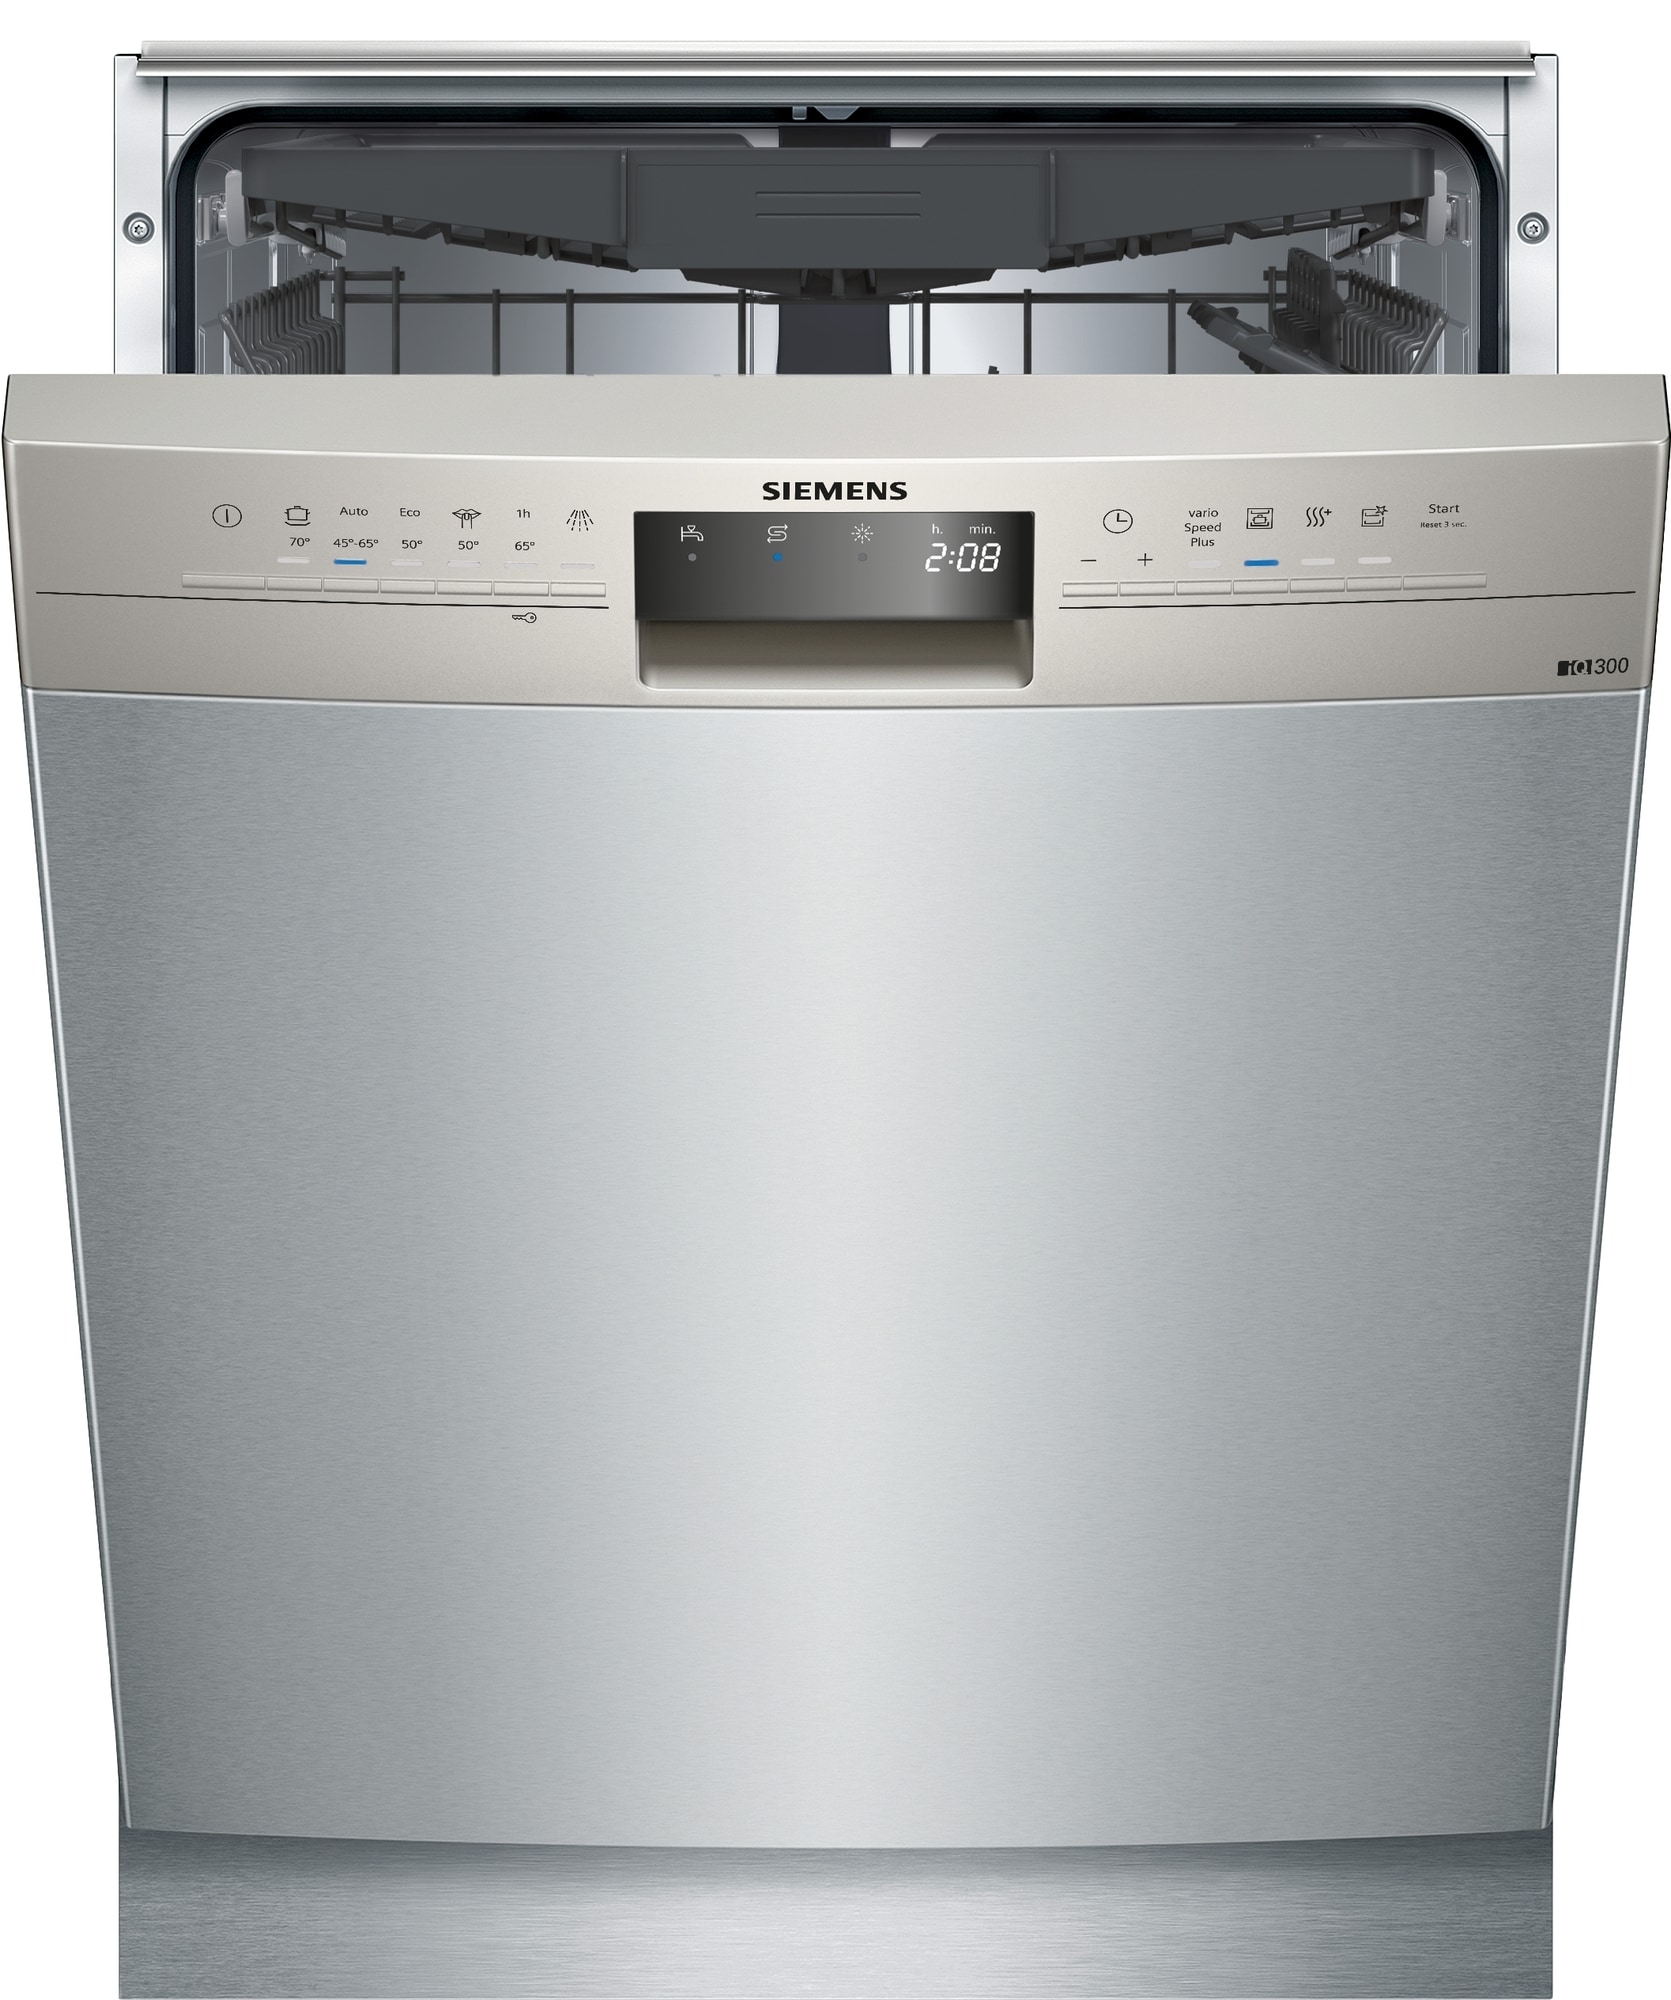 søm udendørs fungere Siemens Opvaskemaskine SN436I06KS (stål) | Opvaskemaskiner 